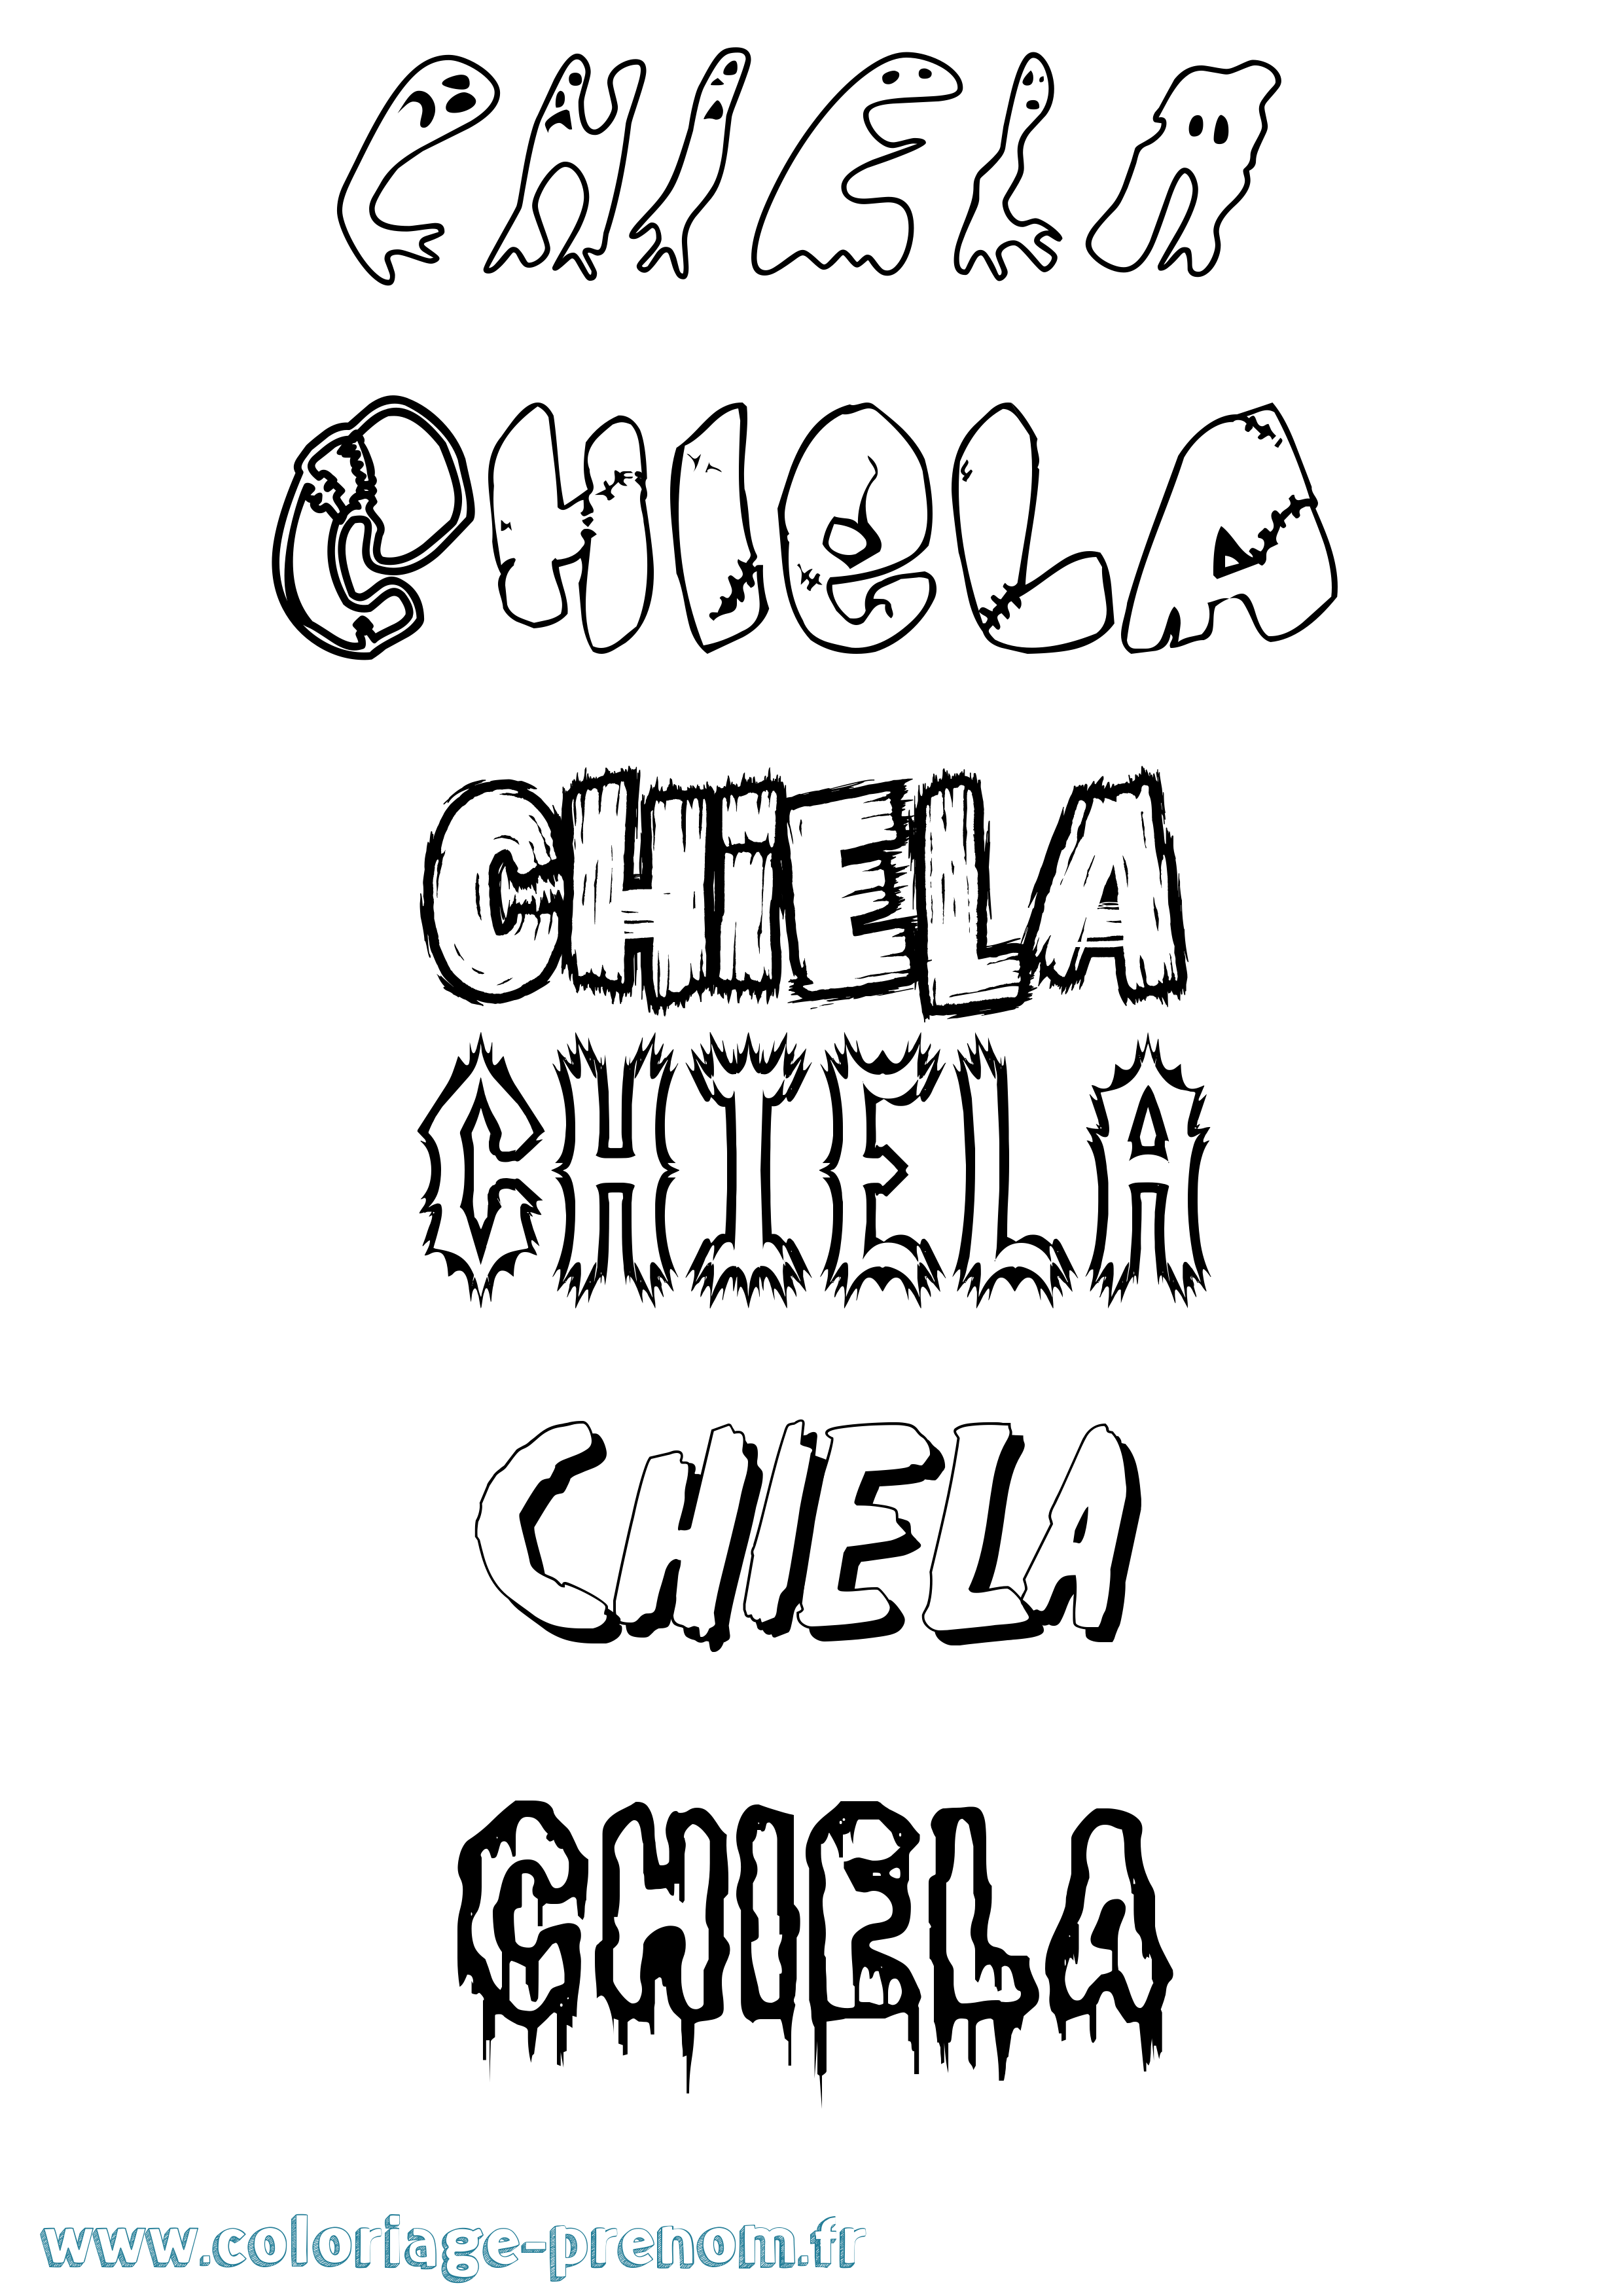 Coloriage prénom Chiela Frisson